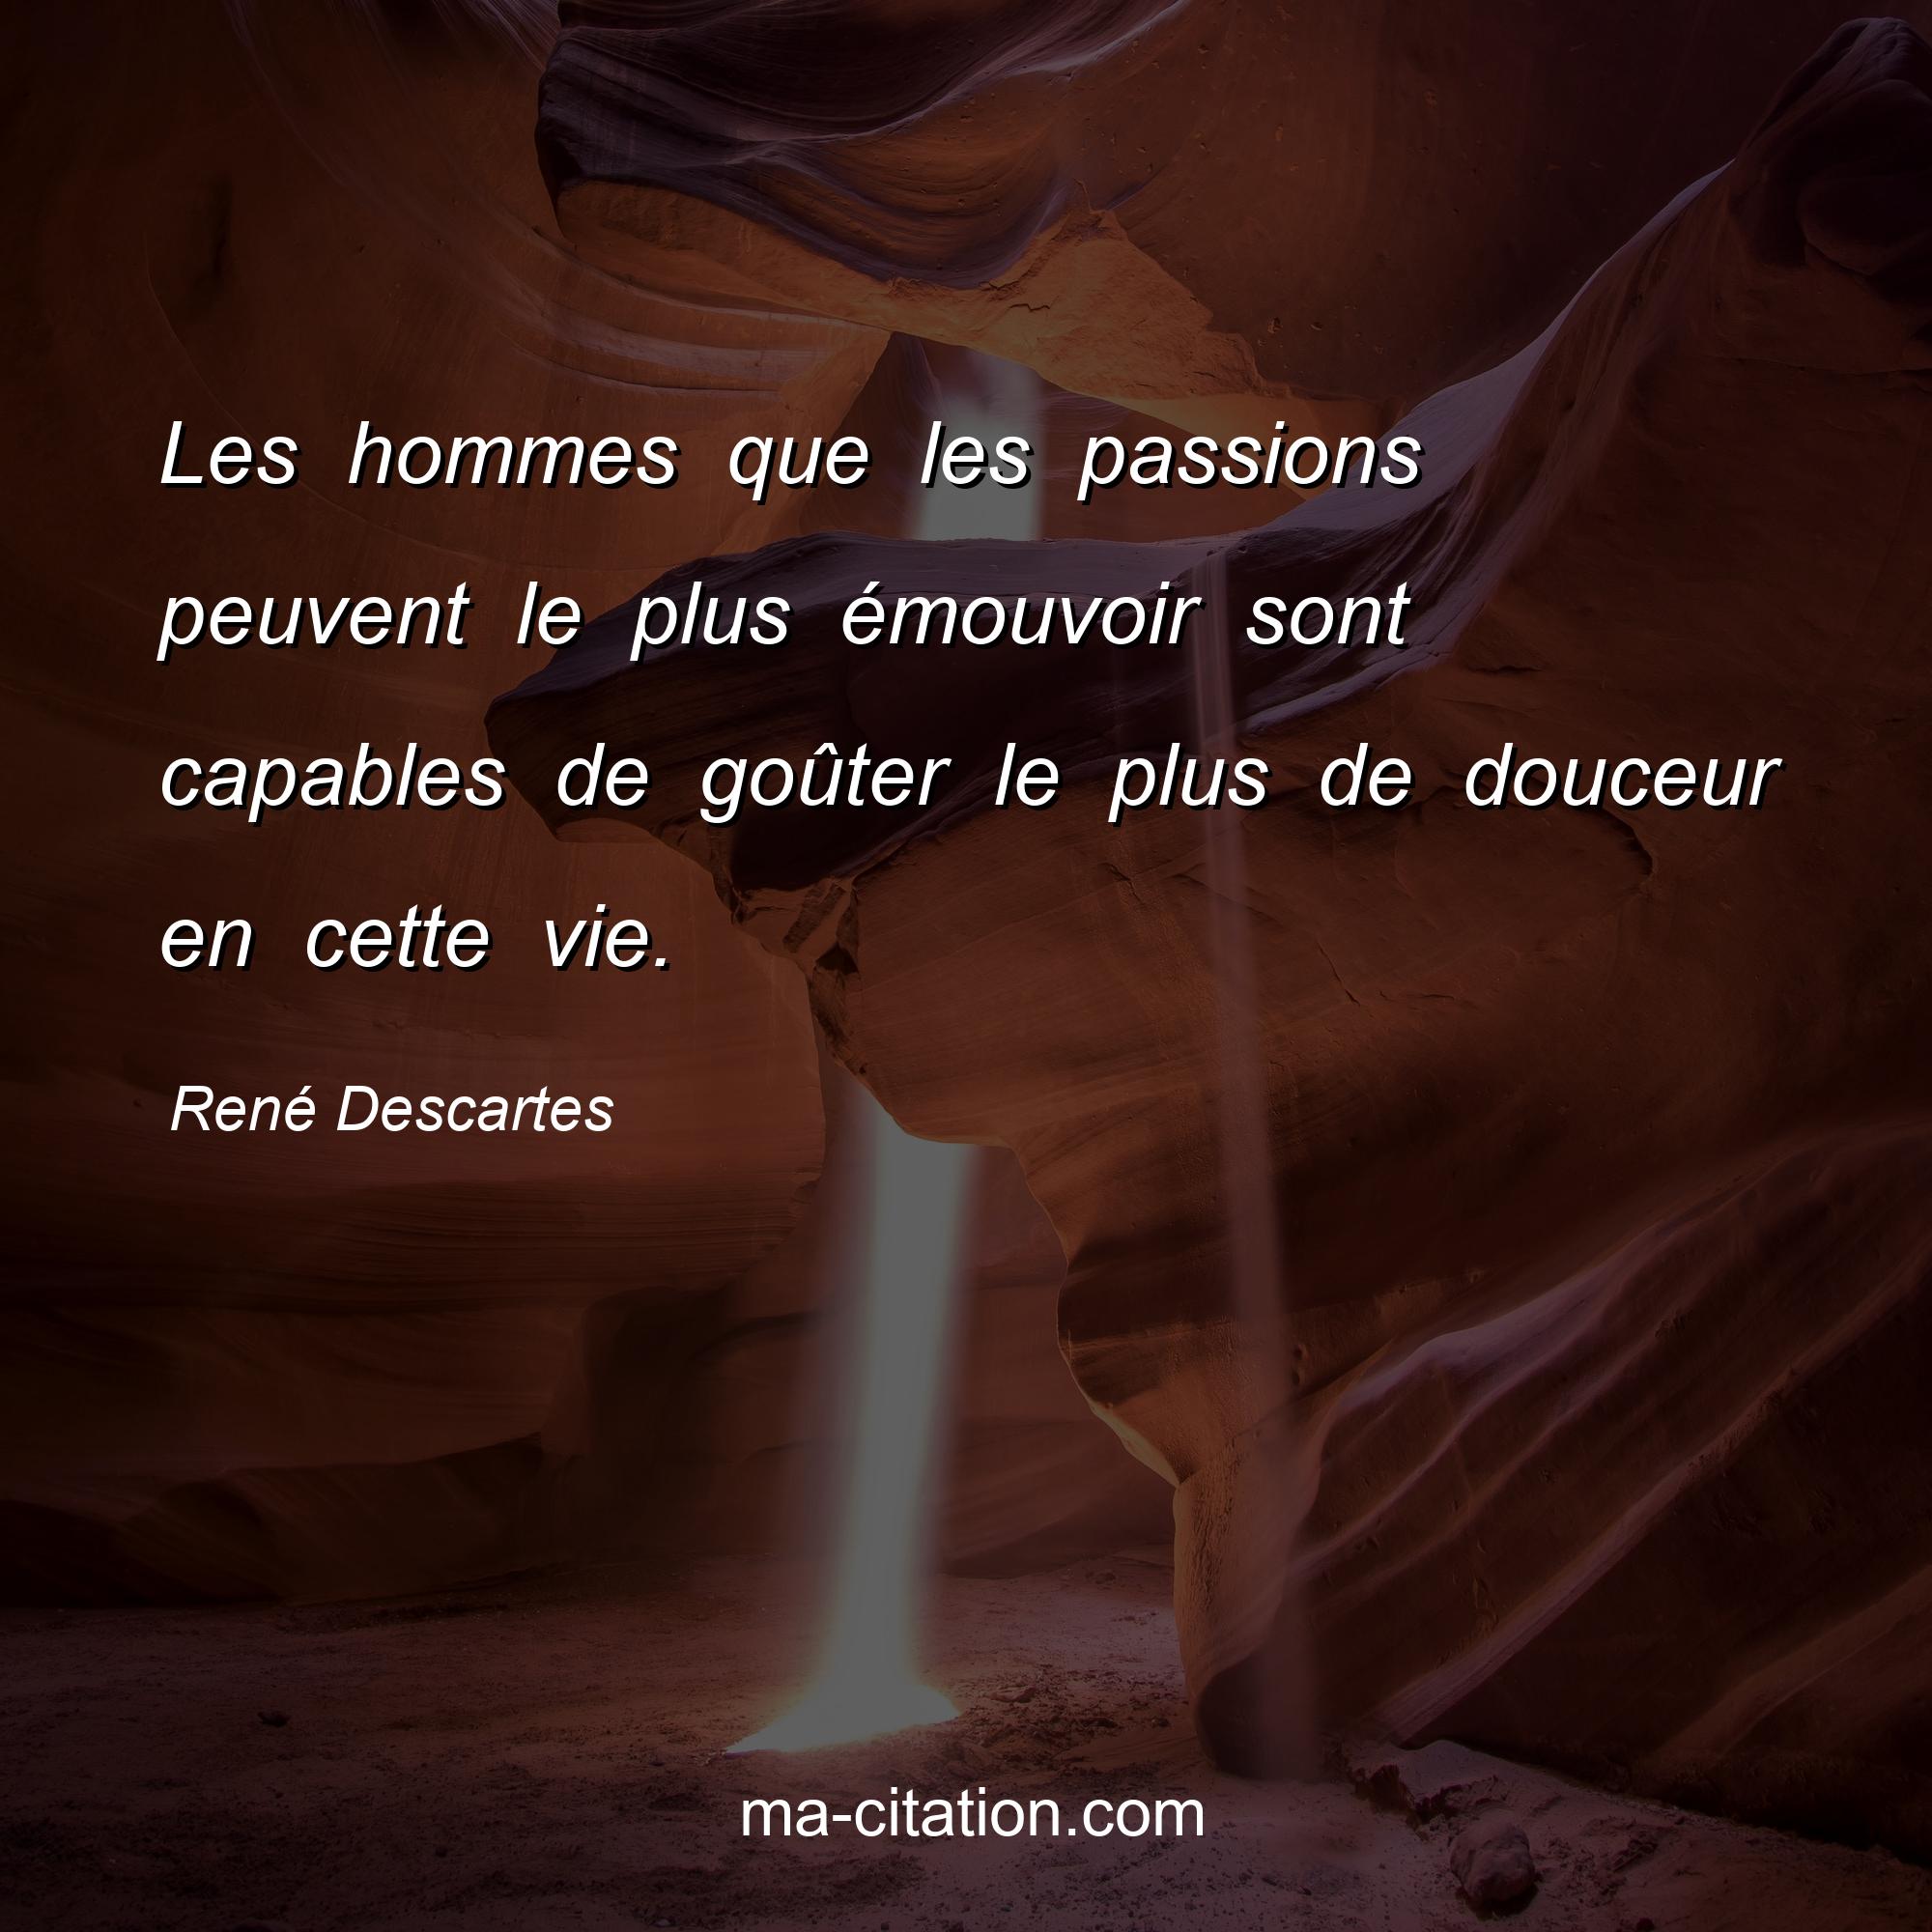 René Descartes : Les hommes que les passions peuvent le plus émouvoir sont capables de goûter le plus de douceur en cette vie.